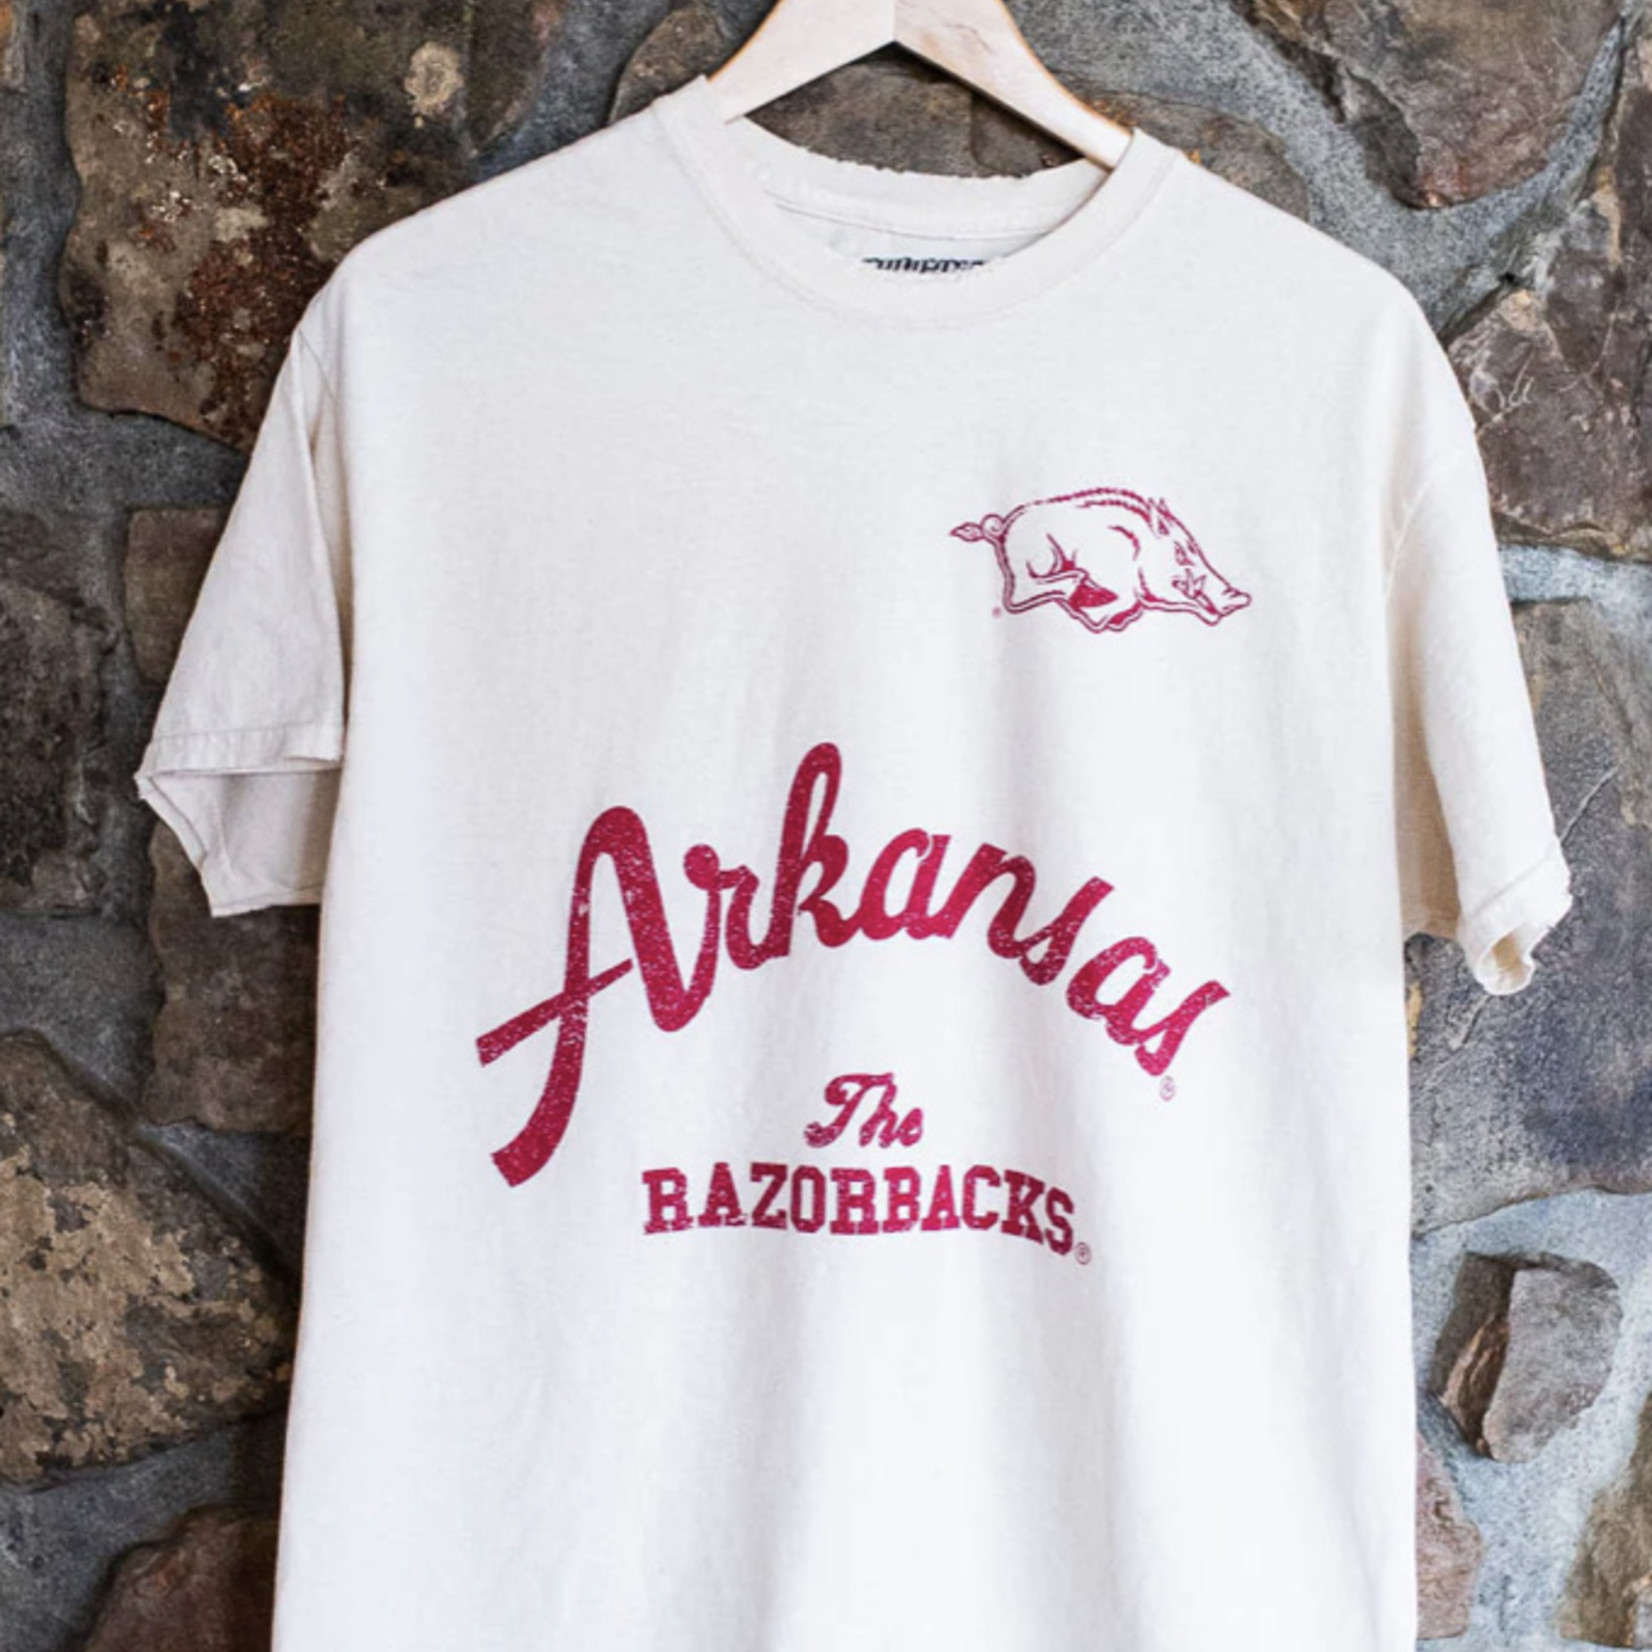 Thrifted Arkansas Tshirt